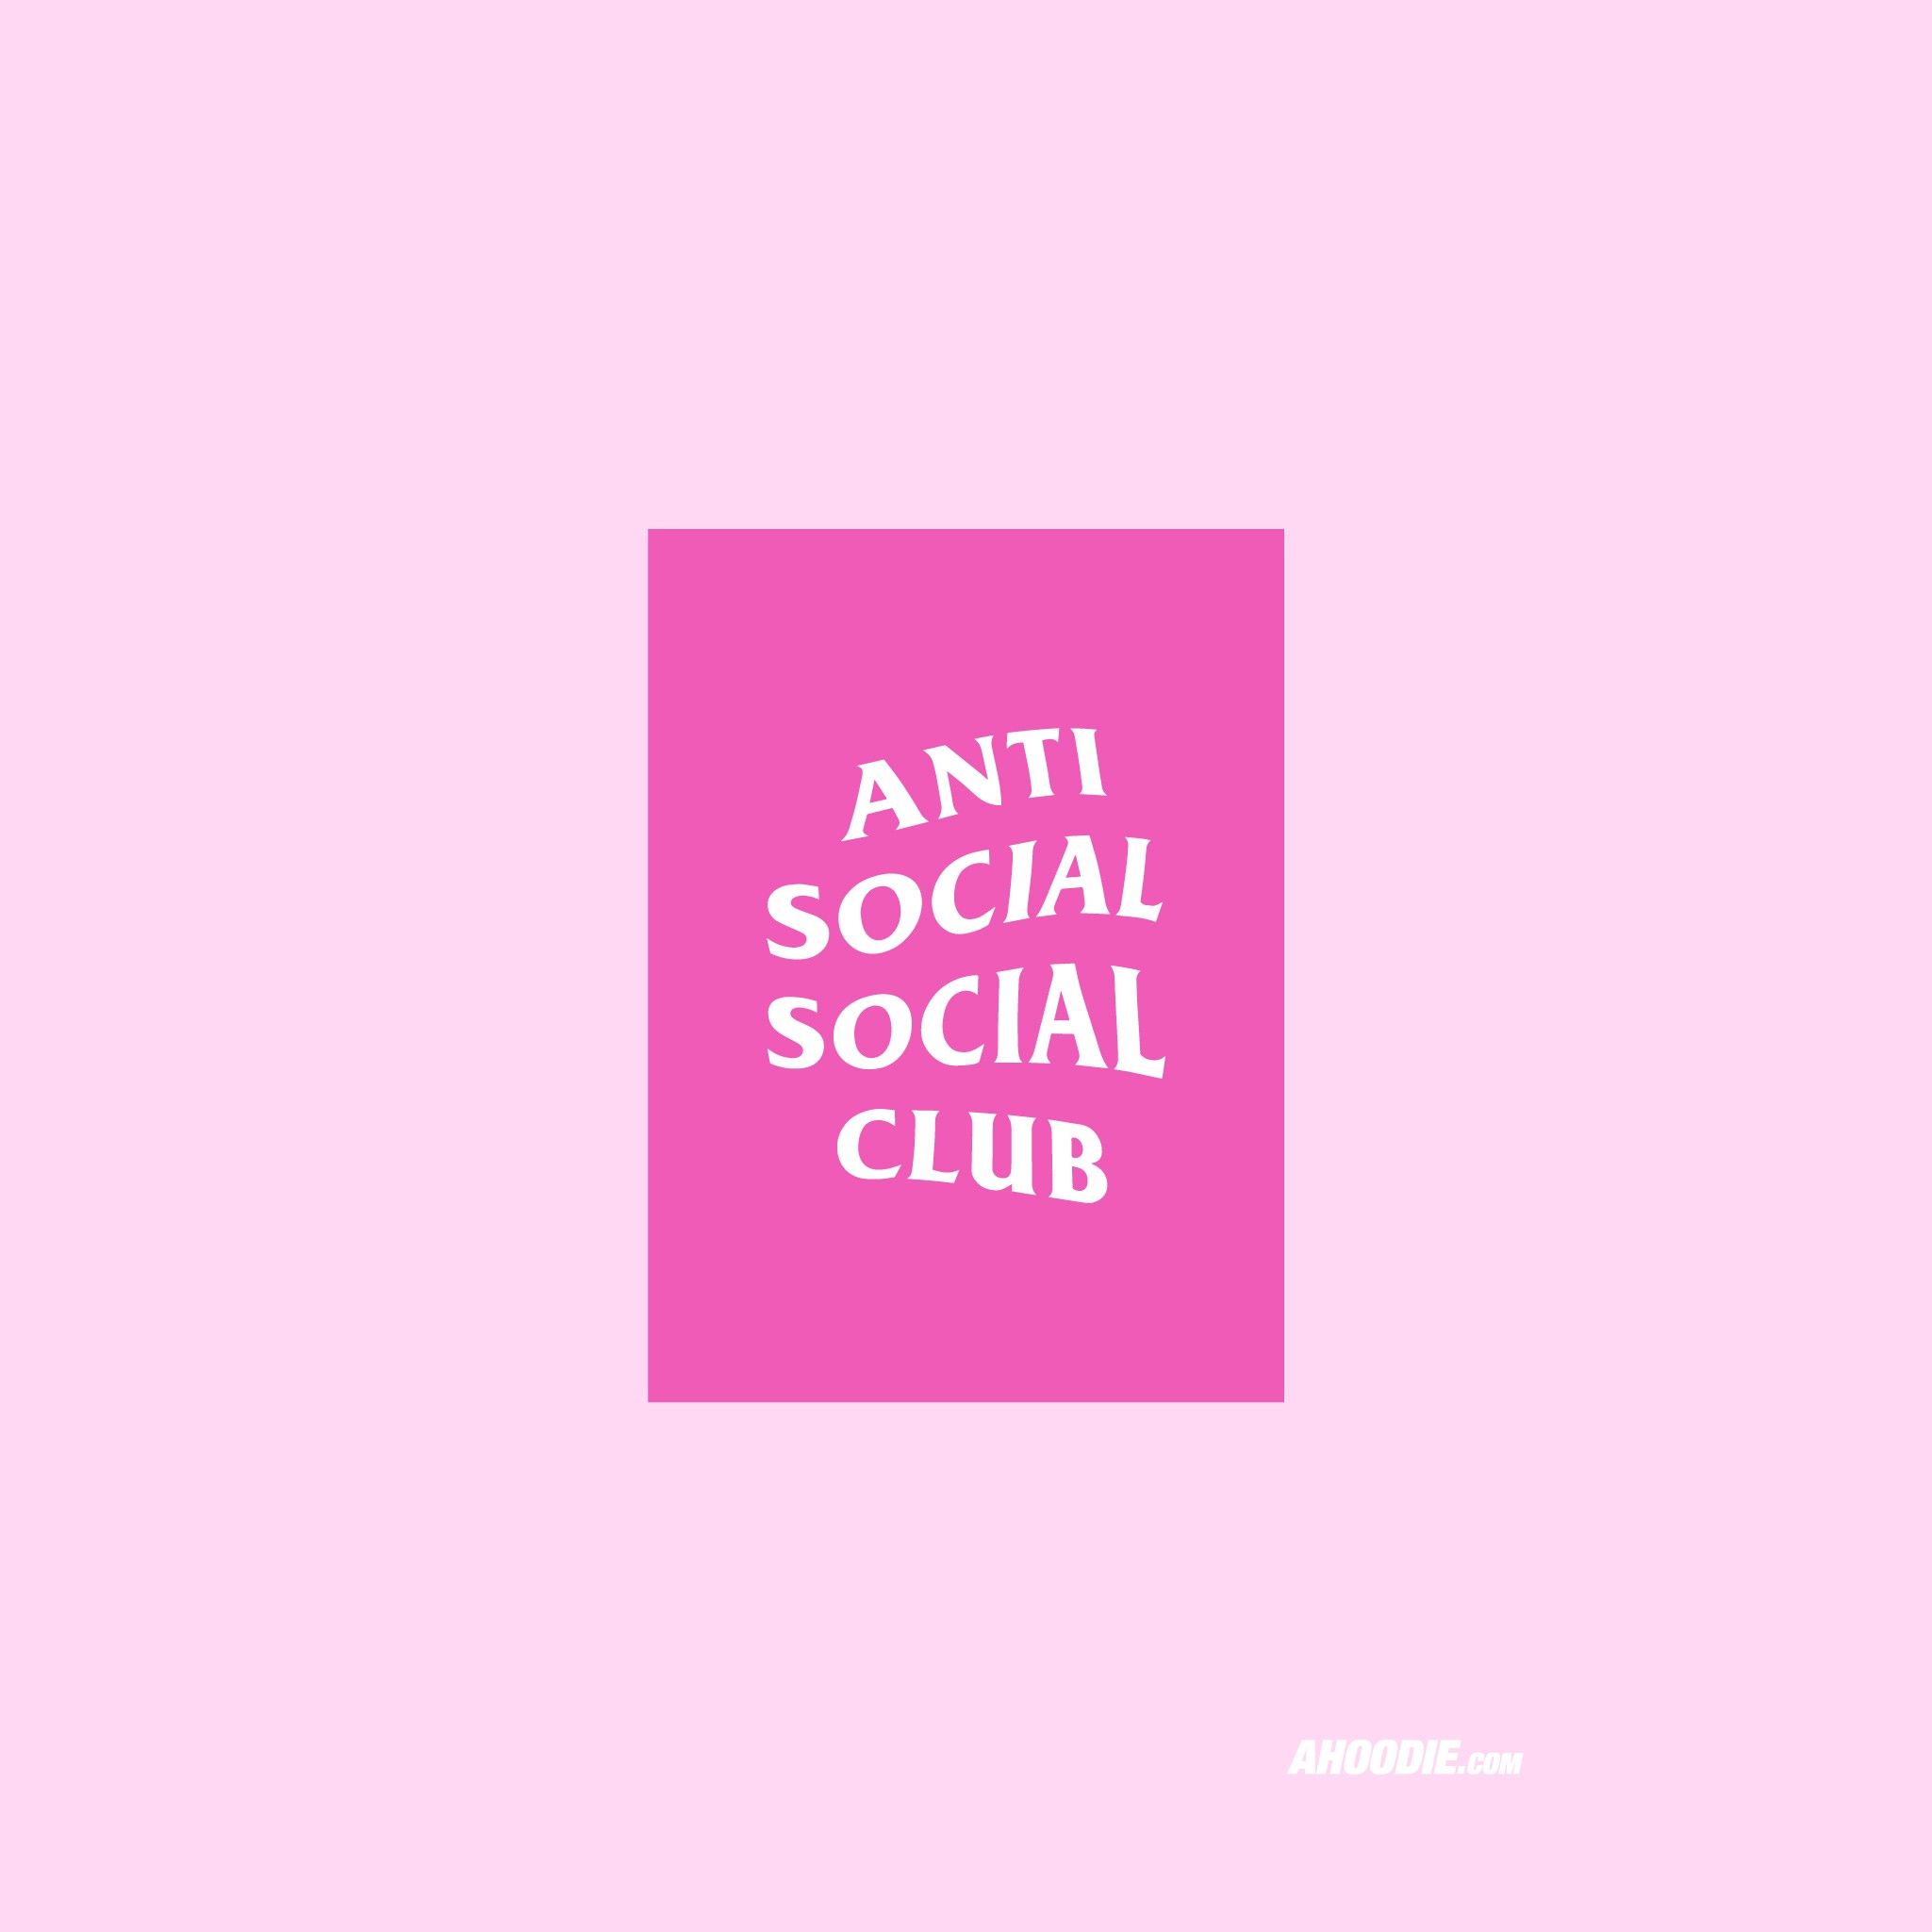 Anti social club poster - Anti Social Social Club